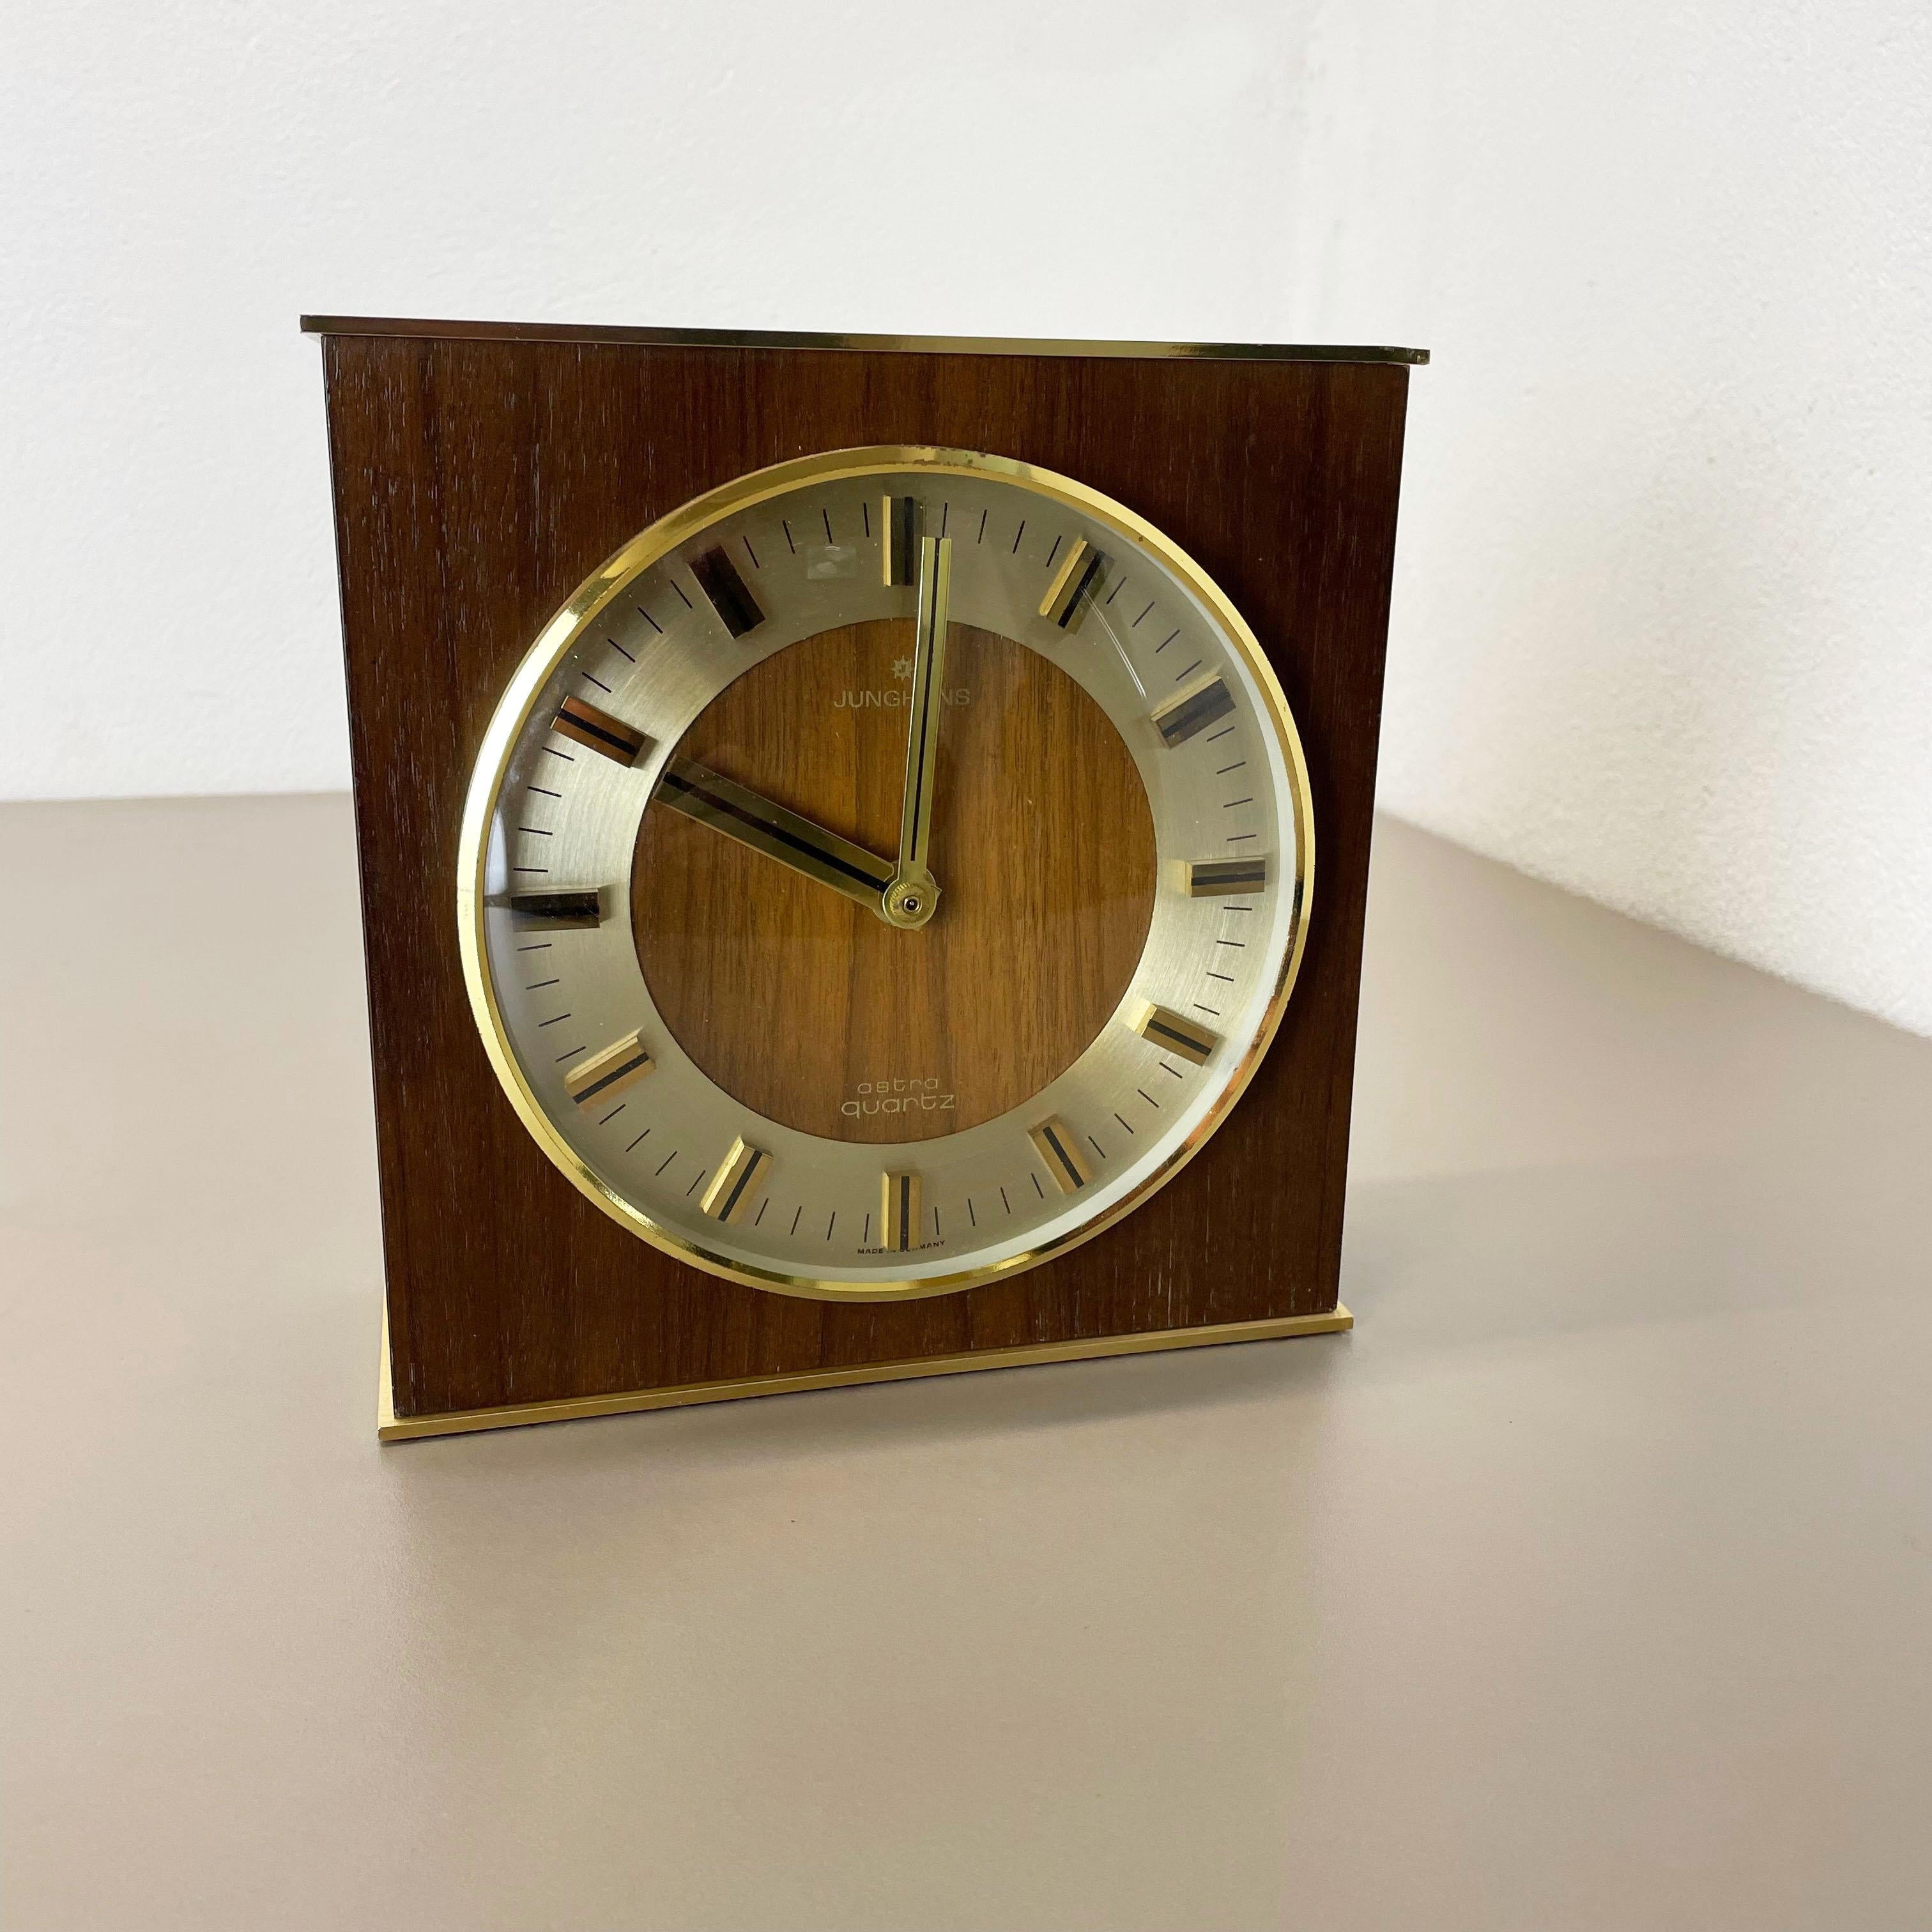 Article :

Horloge de table



Origine :

Allemagne


Producteur :

Junghans Electronic, Allemagne


Âge :

1970s



Description :

Cette horloge de table vintage originale a été produite dans les années 1960 par le fabricant